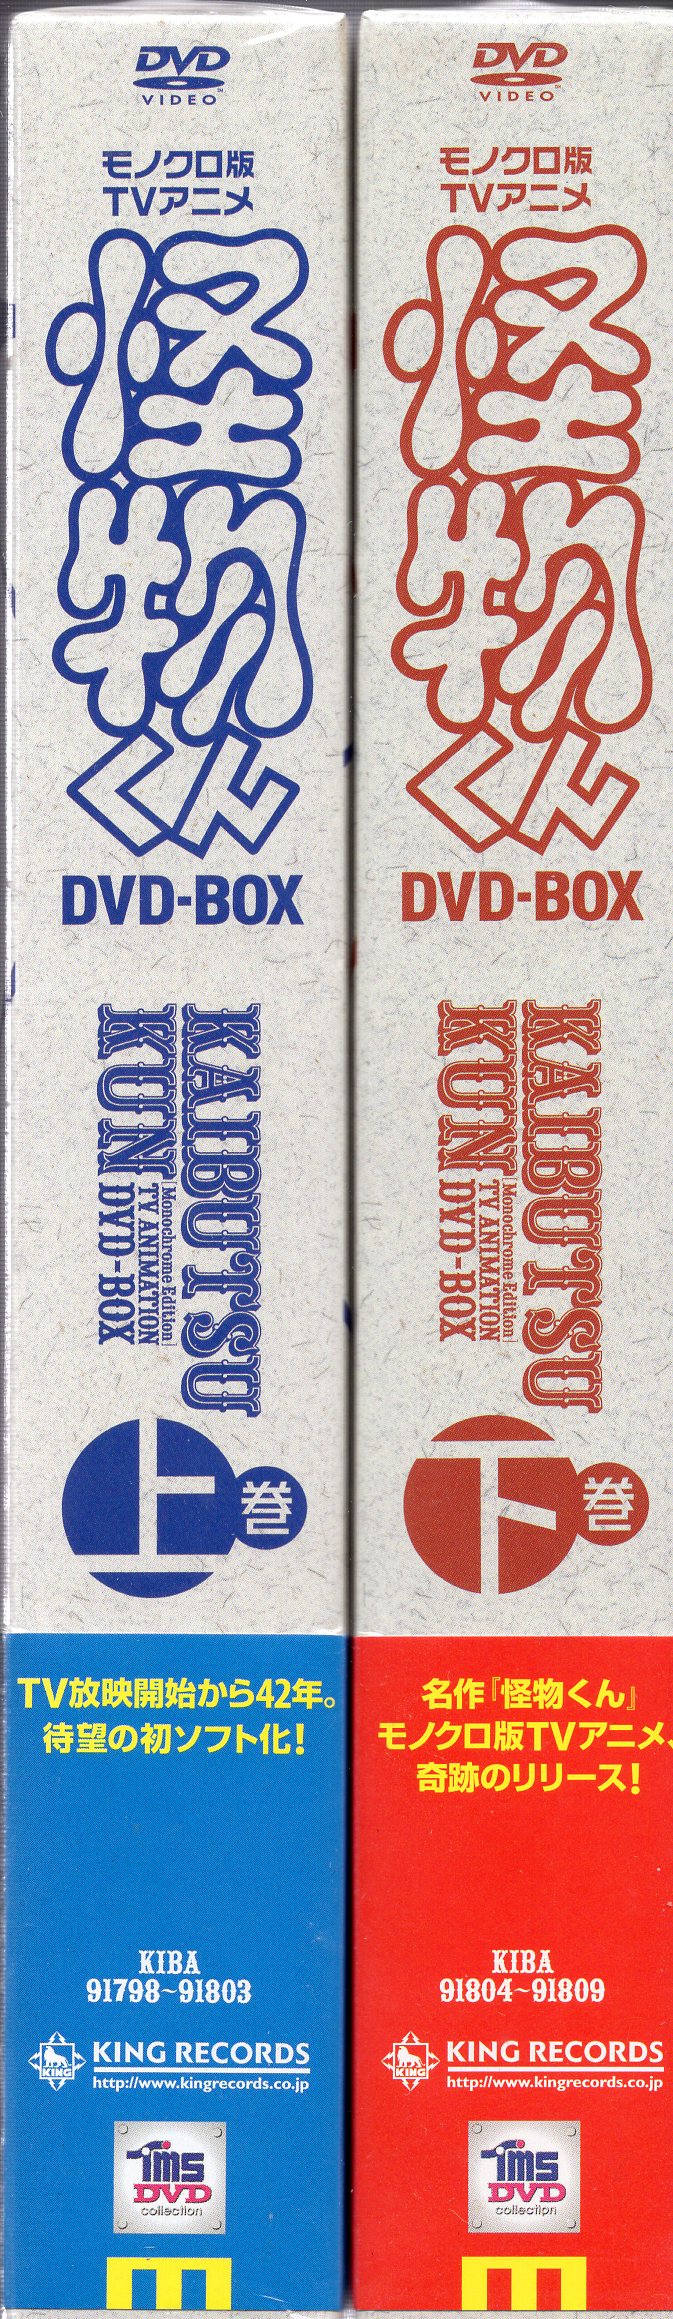 日本最大のブランド モノクロ版TVアニメ 怪物くん DVD-BOX上巻、下巻